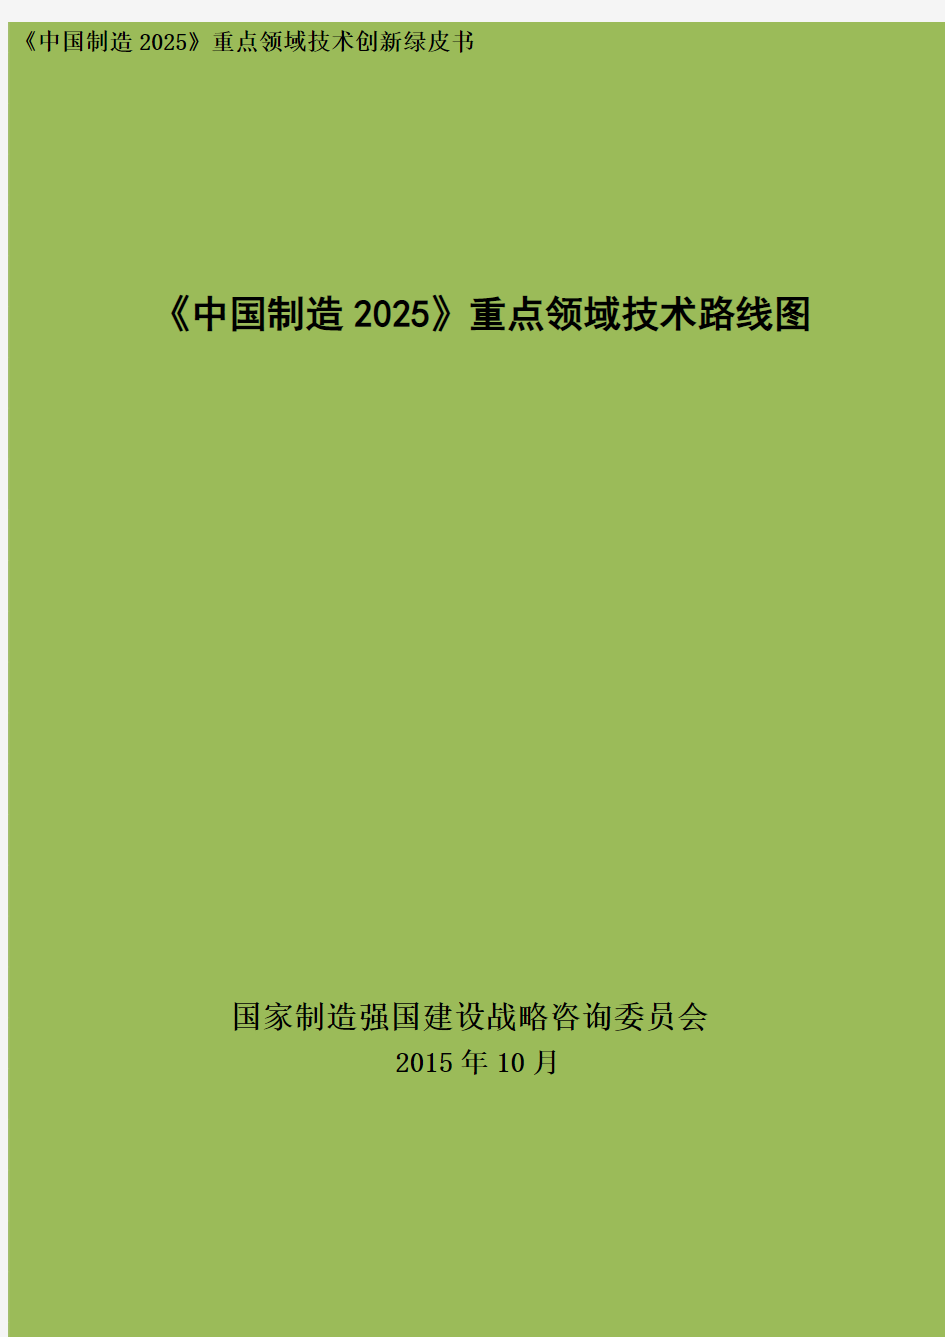 《中国制造2025重点领域技术路线图(2015年版)》